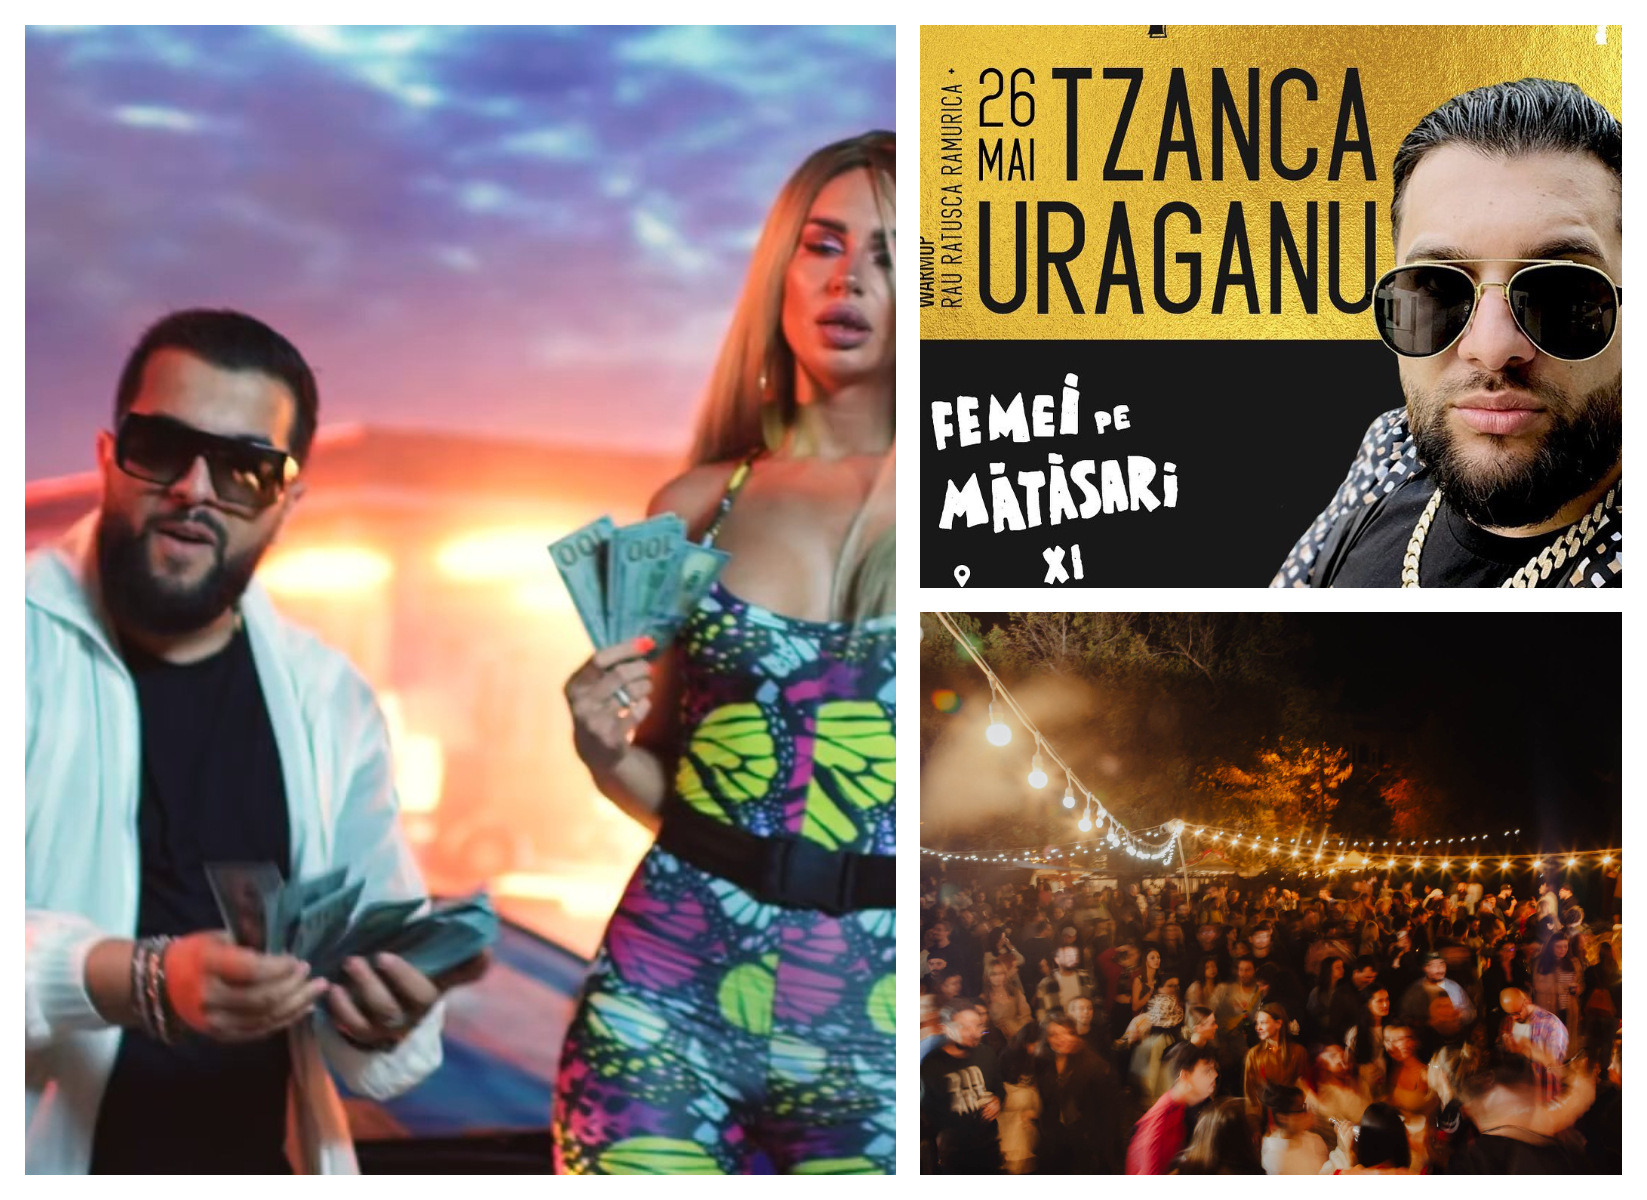 Primăria Capitalei a devenit partener la o cântare a manelistului Tzanca Uraganu’! Festivalul Femei pe Mătăsari, cântare ”ca la ușa cortului”